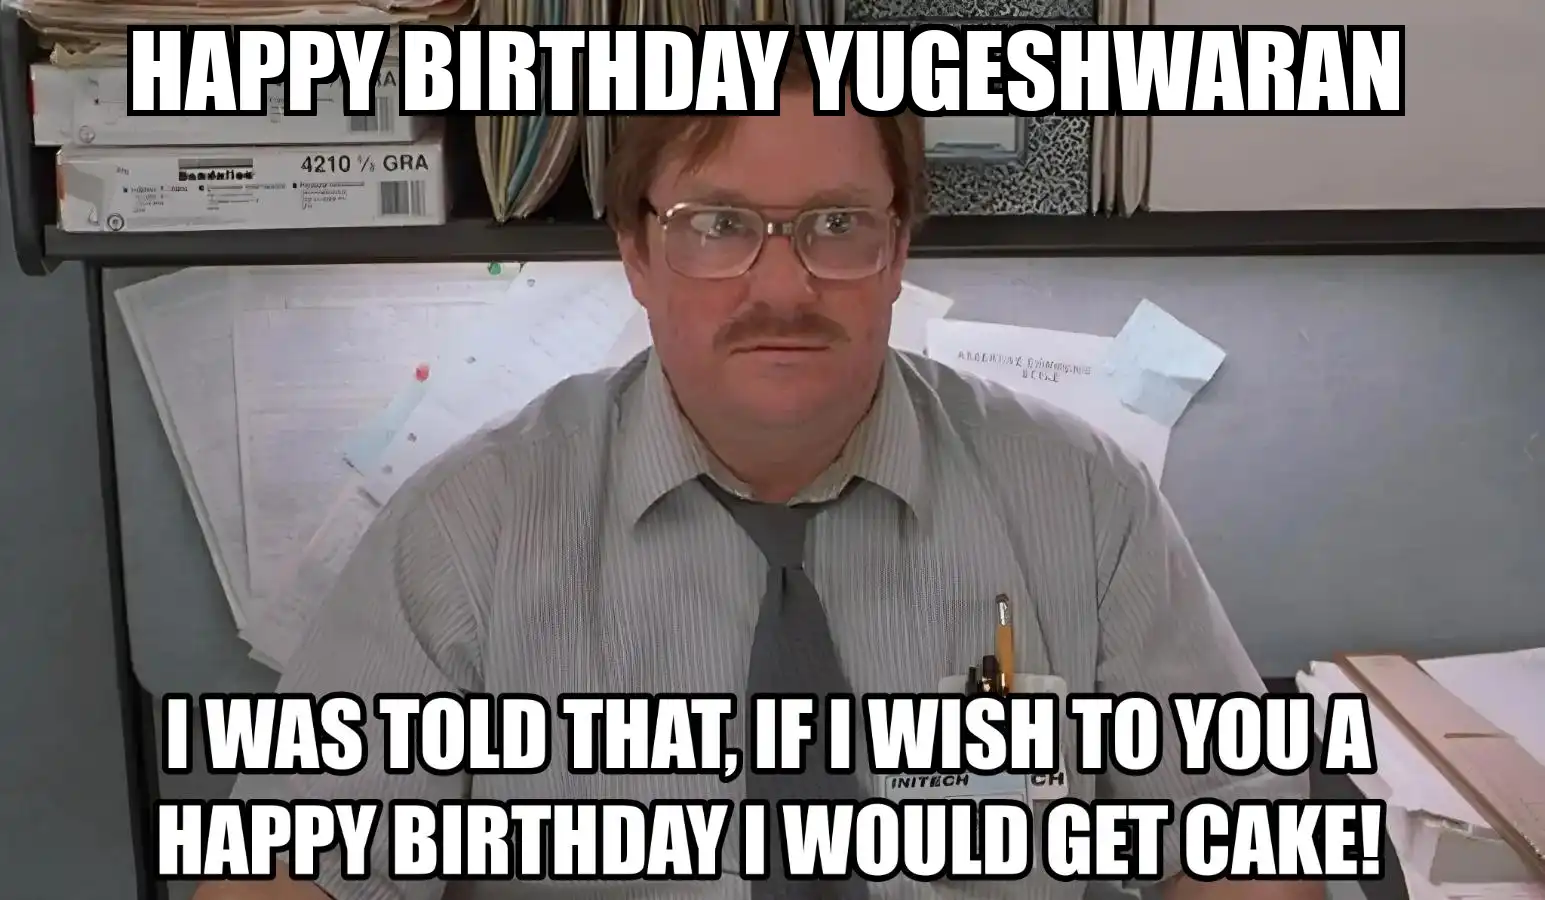 Happy Birthday Yugeshwaran I Would Get A Cake Meme